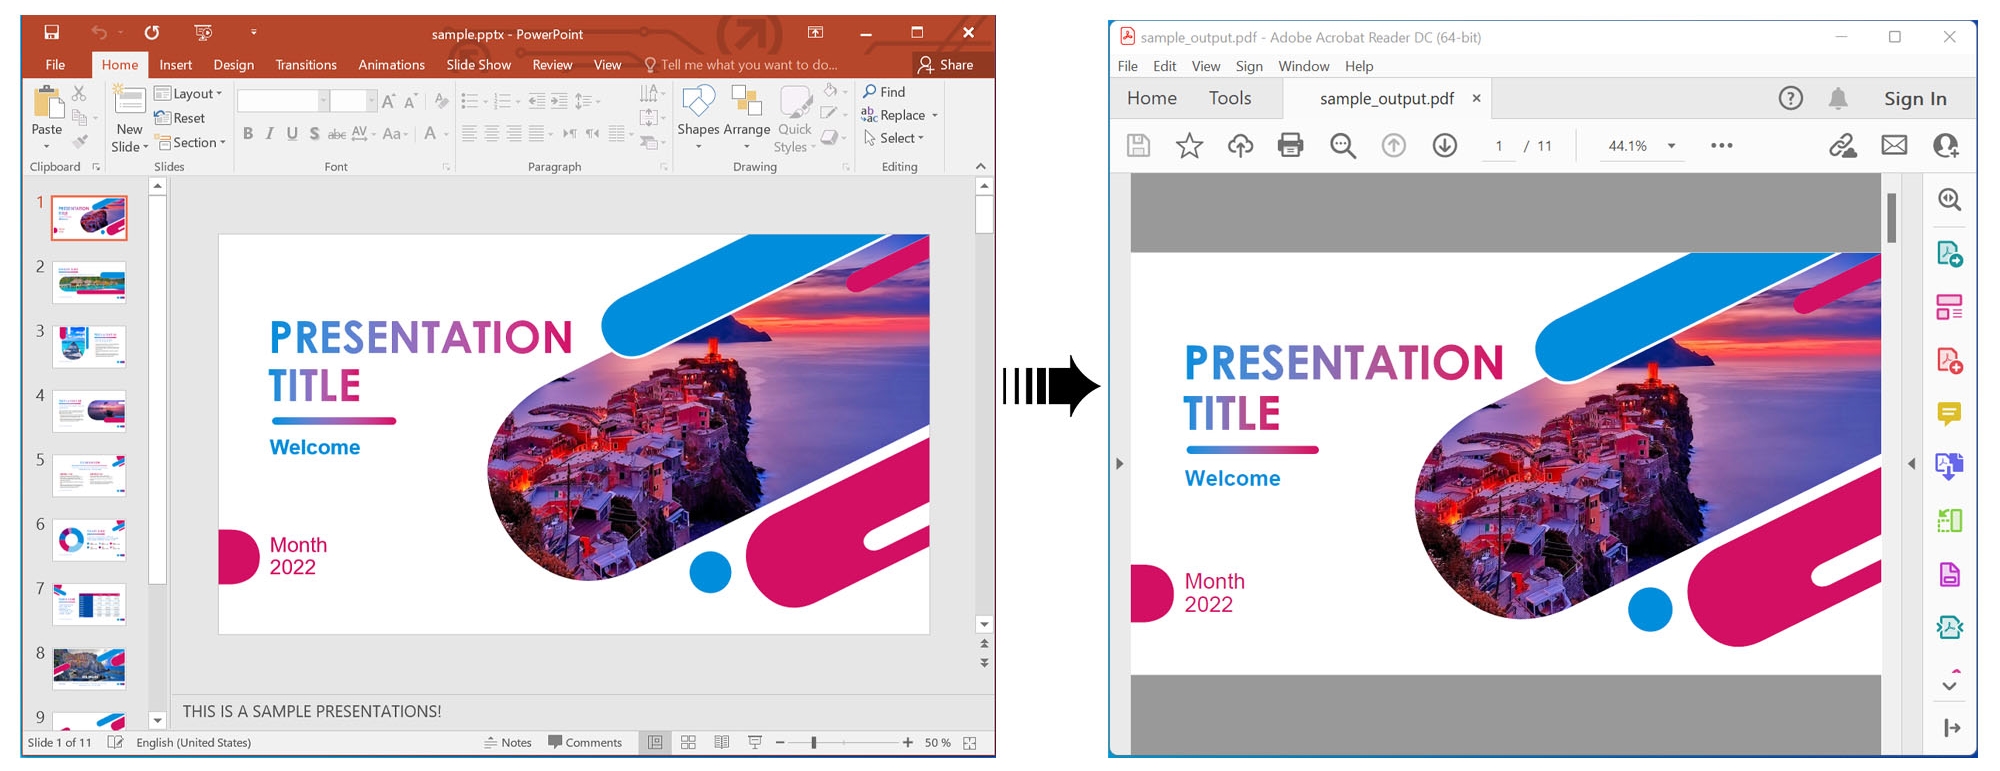 Render Presentasi PowerPoint dalam PDF menggunakan C#.